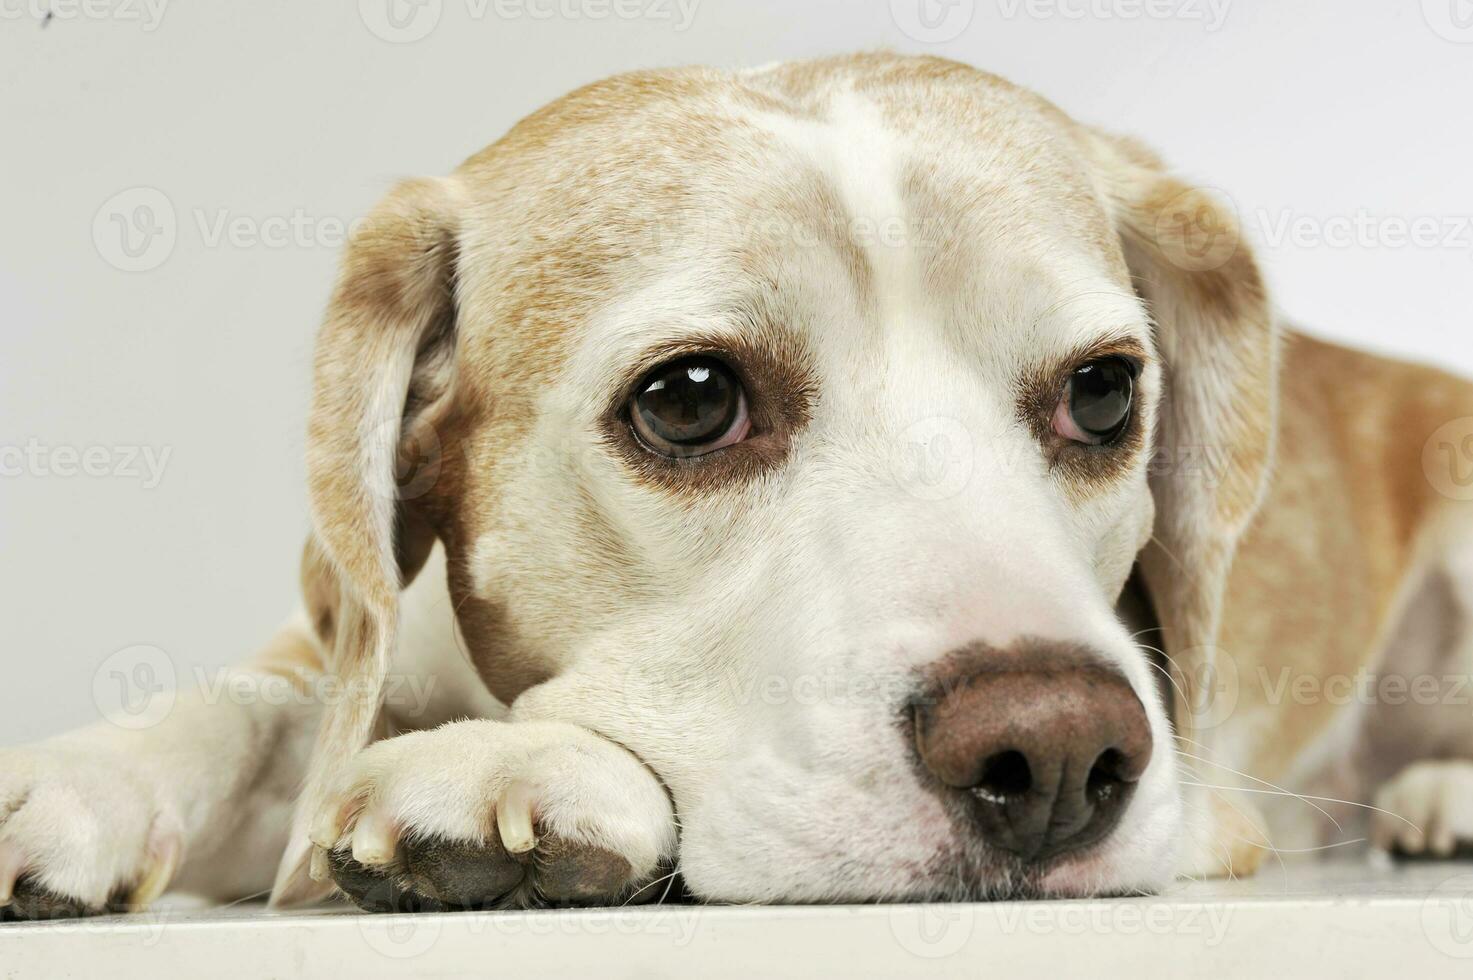 ritratto di un adorabile beagle foto